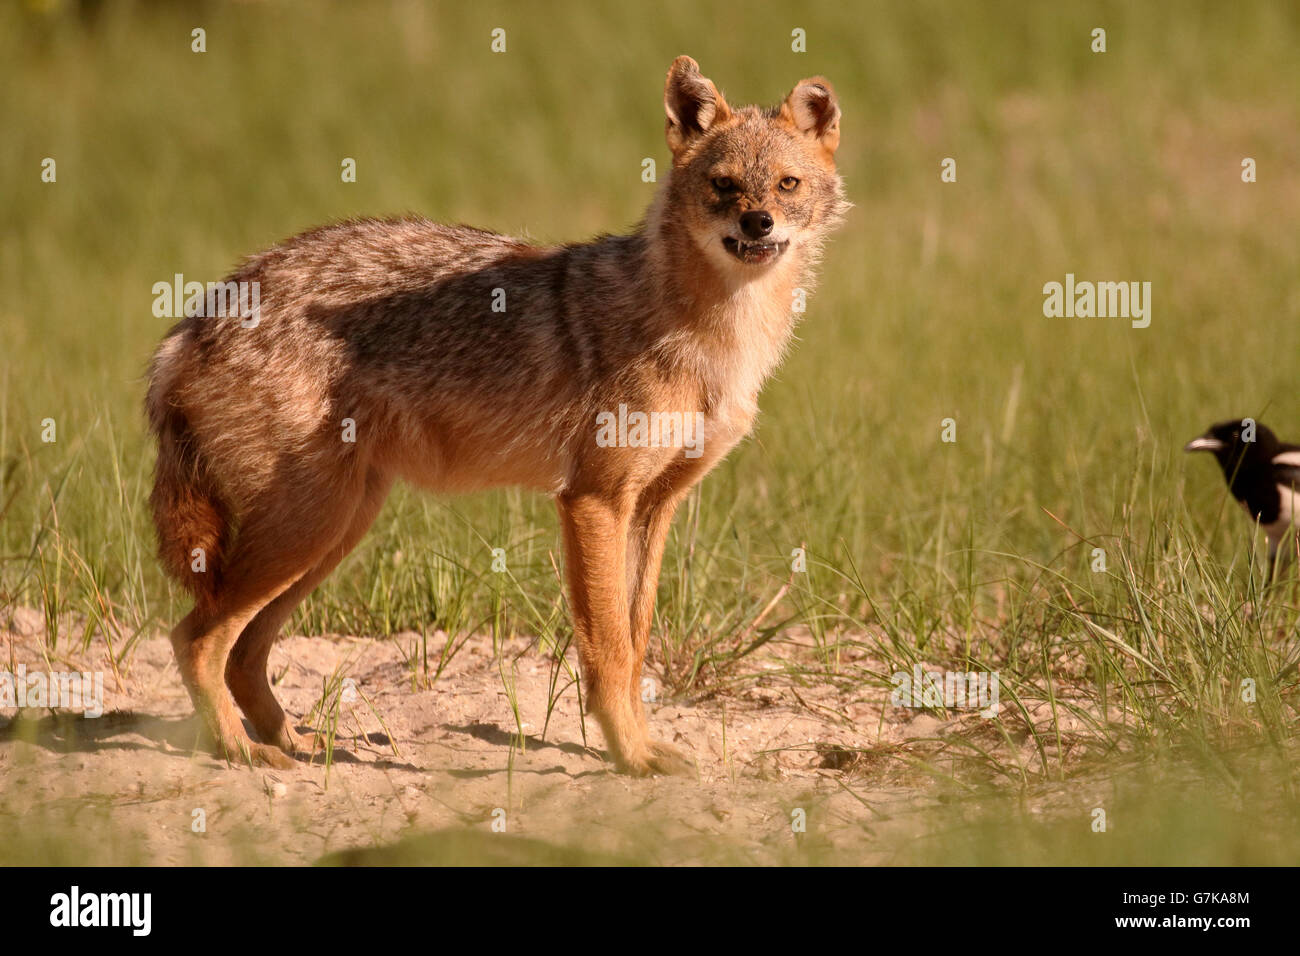 Chacal européen, Canis aureus moreoticus, seul mammifère de l'herbe, Roumanie, Juin 2016 Banque D'Images